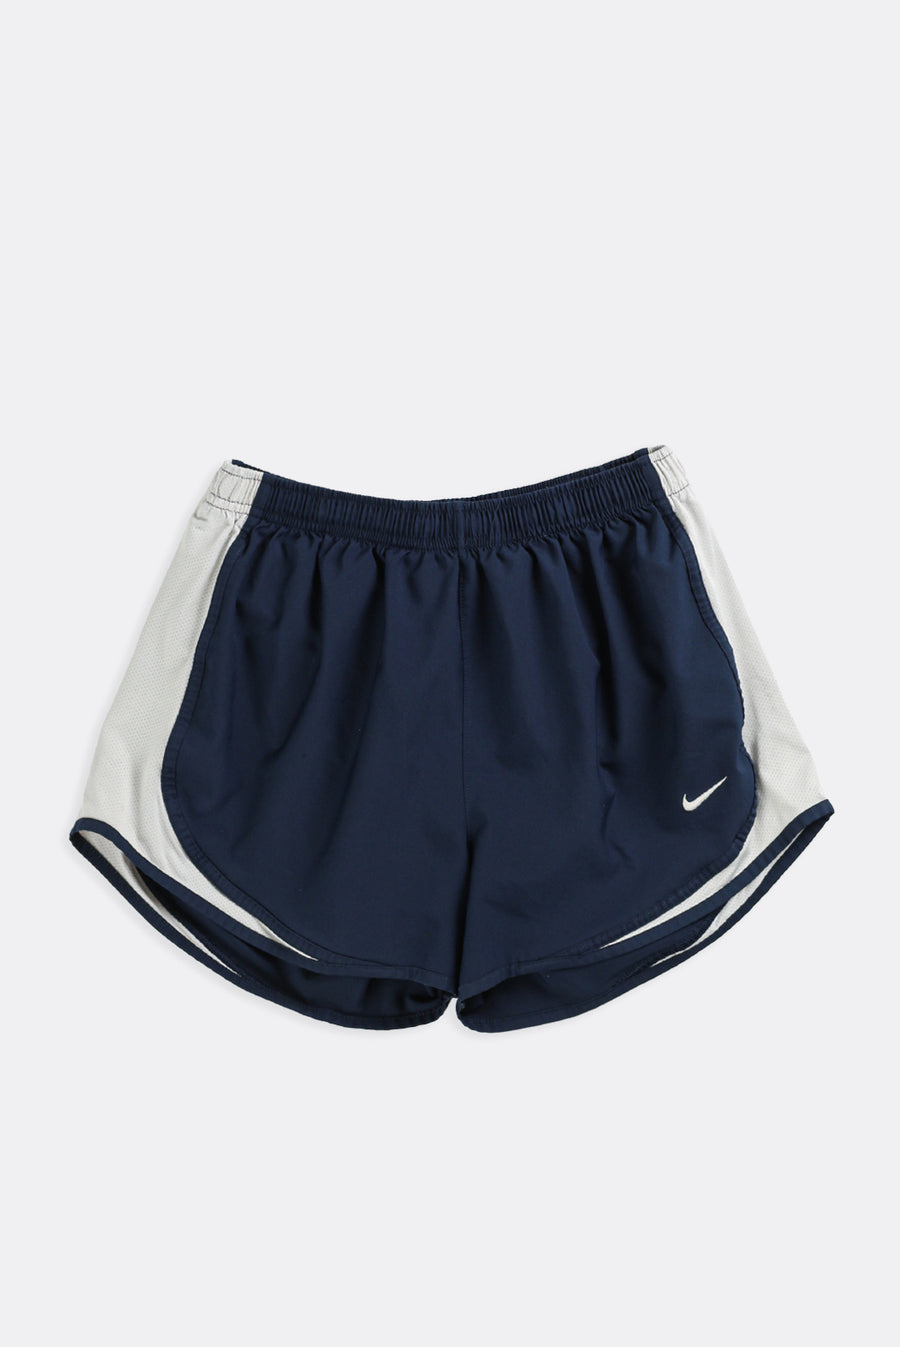 Vintage Nike Shorts - S